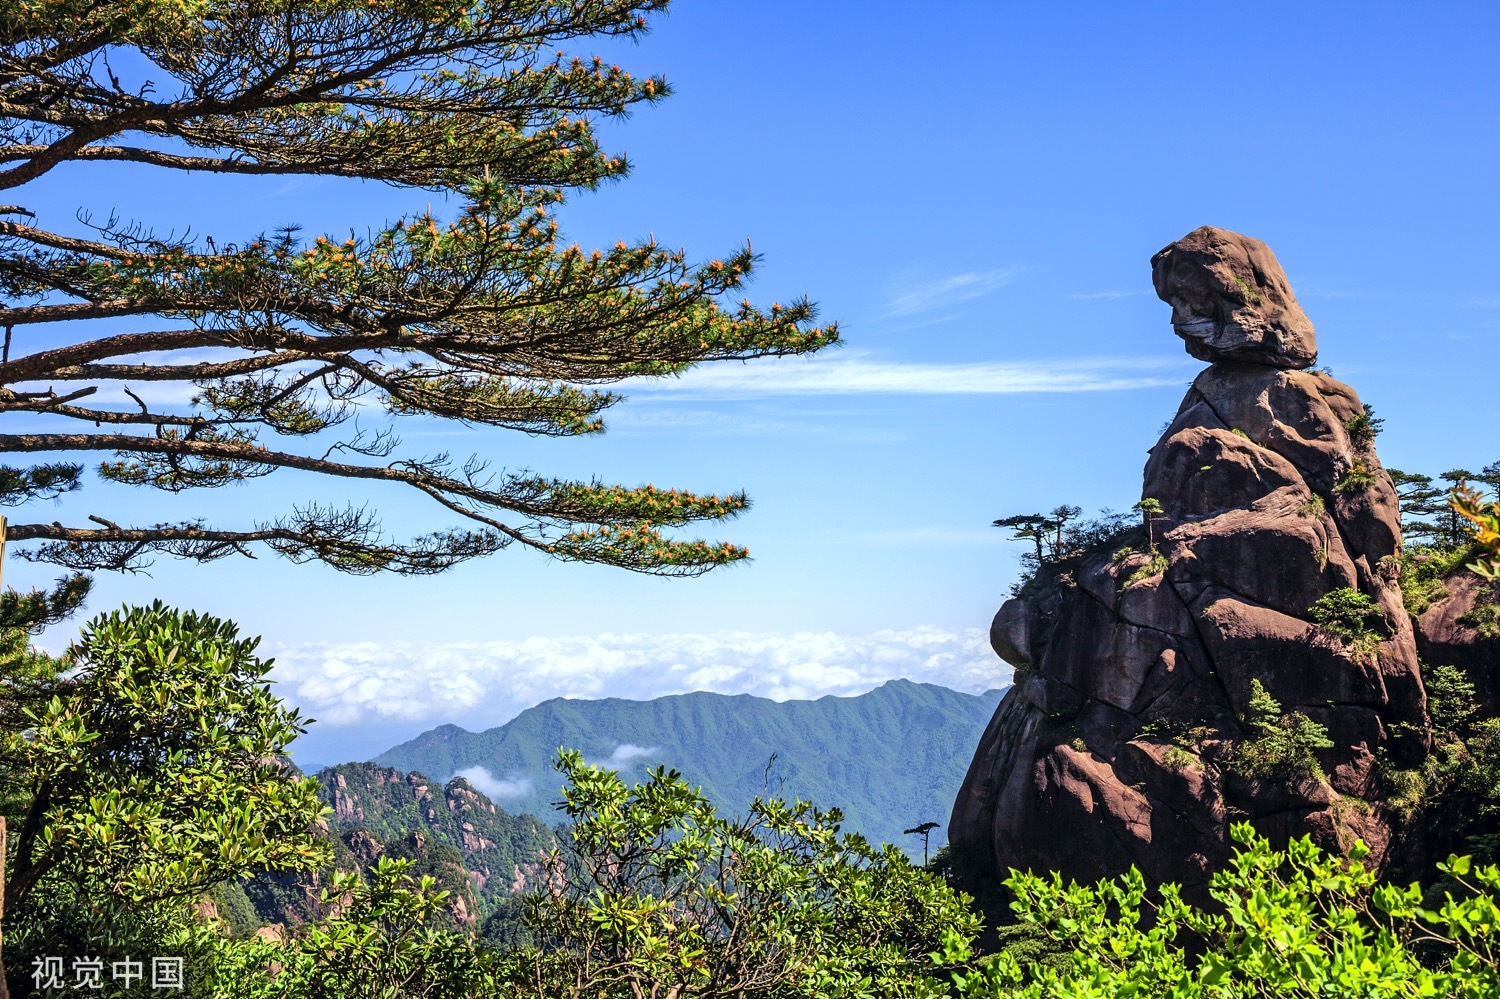 “东方女神”为三清山的代表性景观，它海拔1180米、通高86米，远观似一位女神，面容清秀、长发飘逸，颔首端坐在山巅，栩栩如生。李惠民/视觉中国